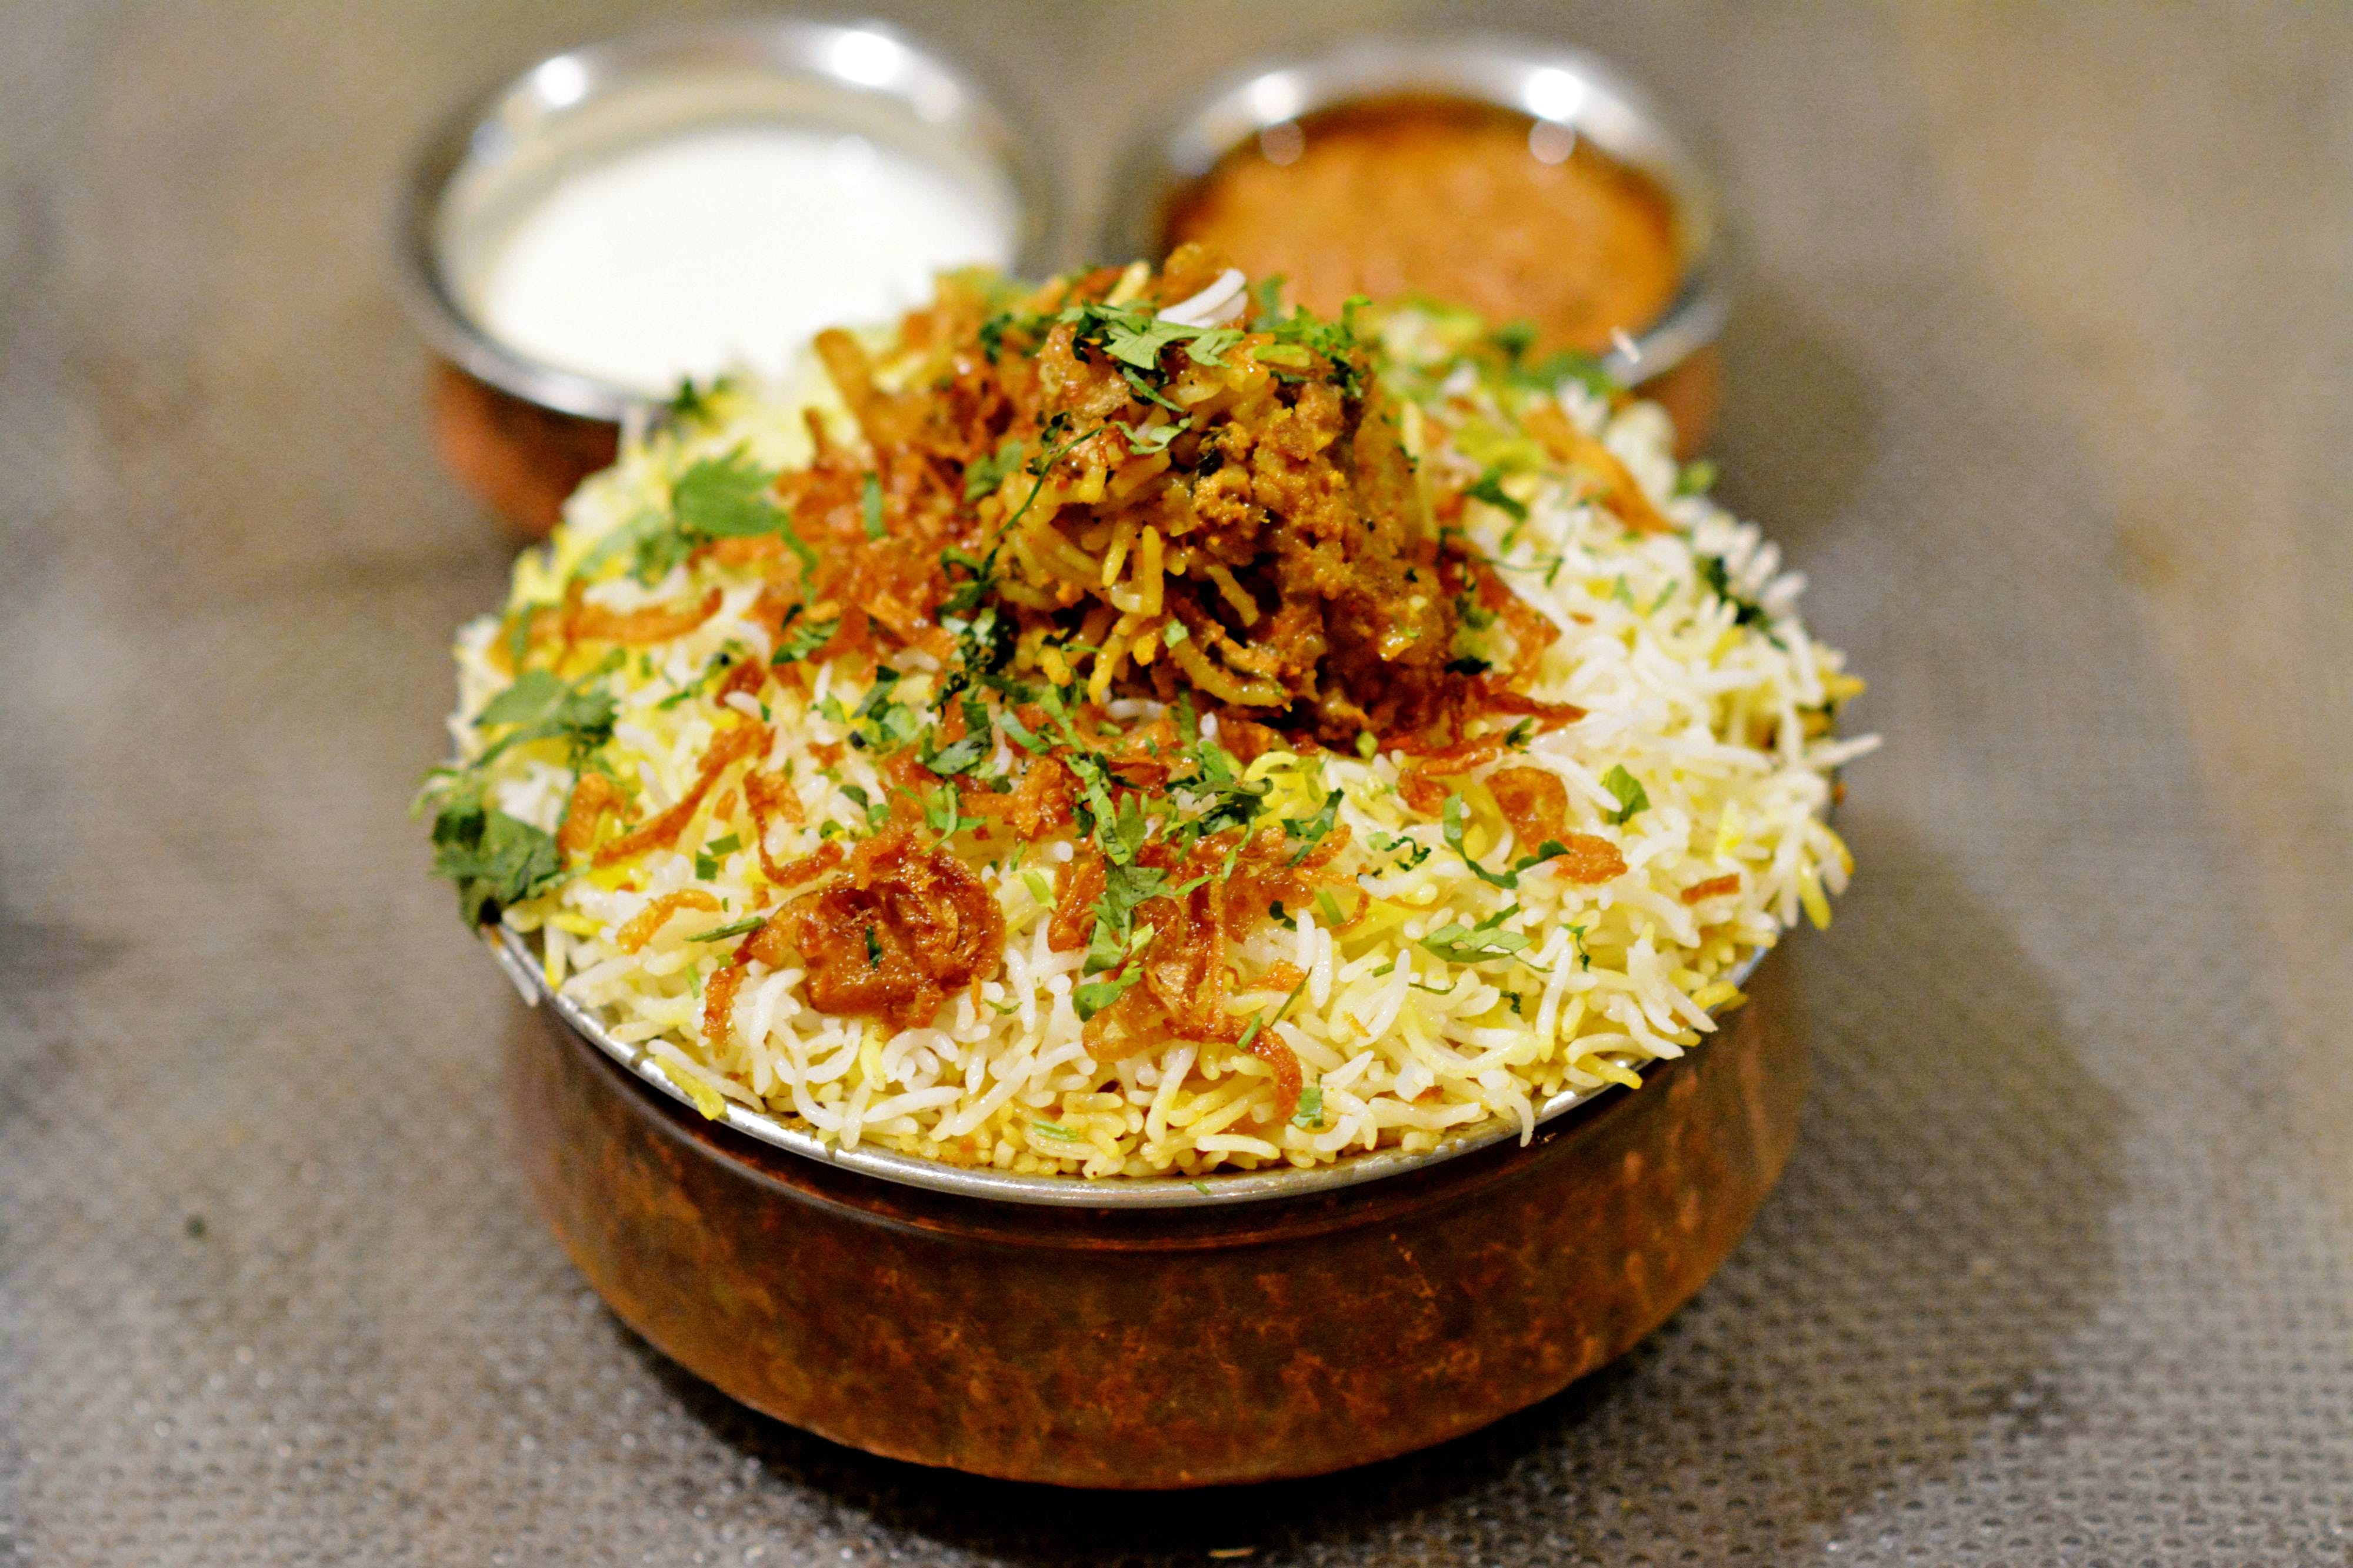 Dish,Food,Cuisine,Ingredient,Biryani,Hyderabadi biriyani,Recipe,Produce,Indian cuisine,Basmati